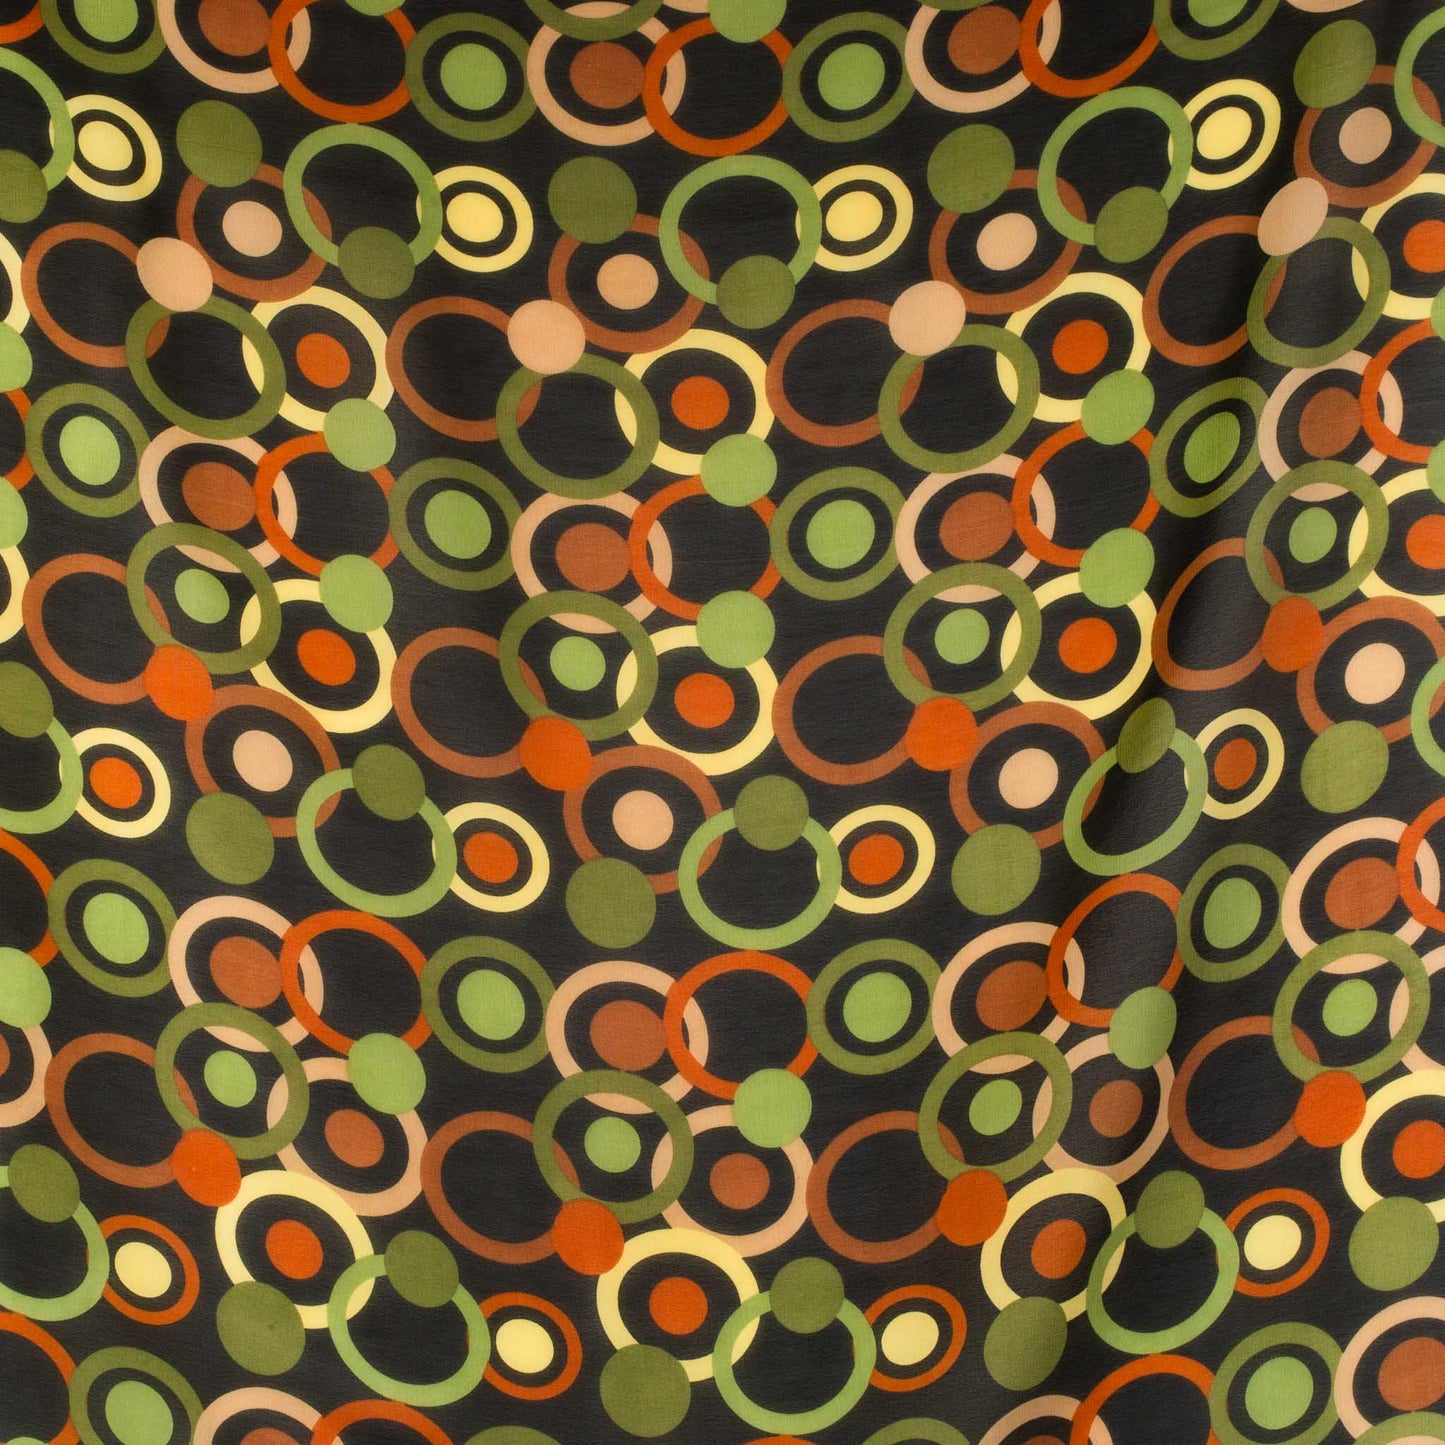 Eșarfă damă din mătase , imprimeu cu cercuri, 65 x 65 cm - Verde, Maro